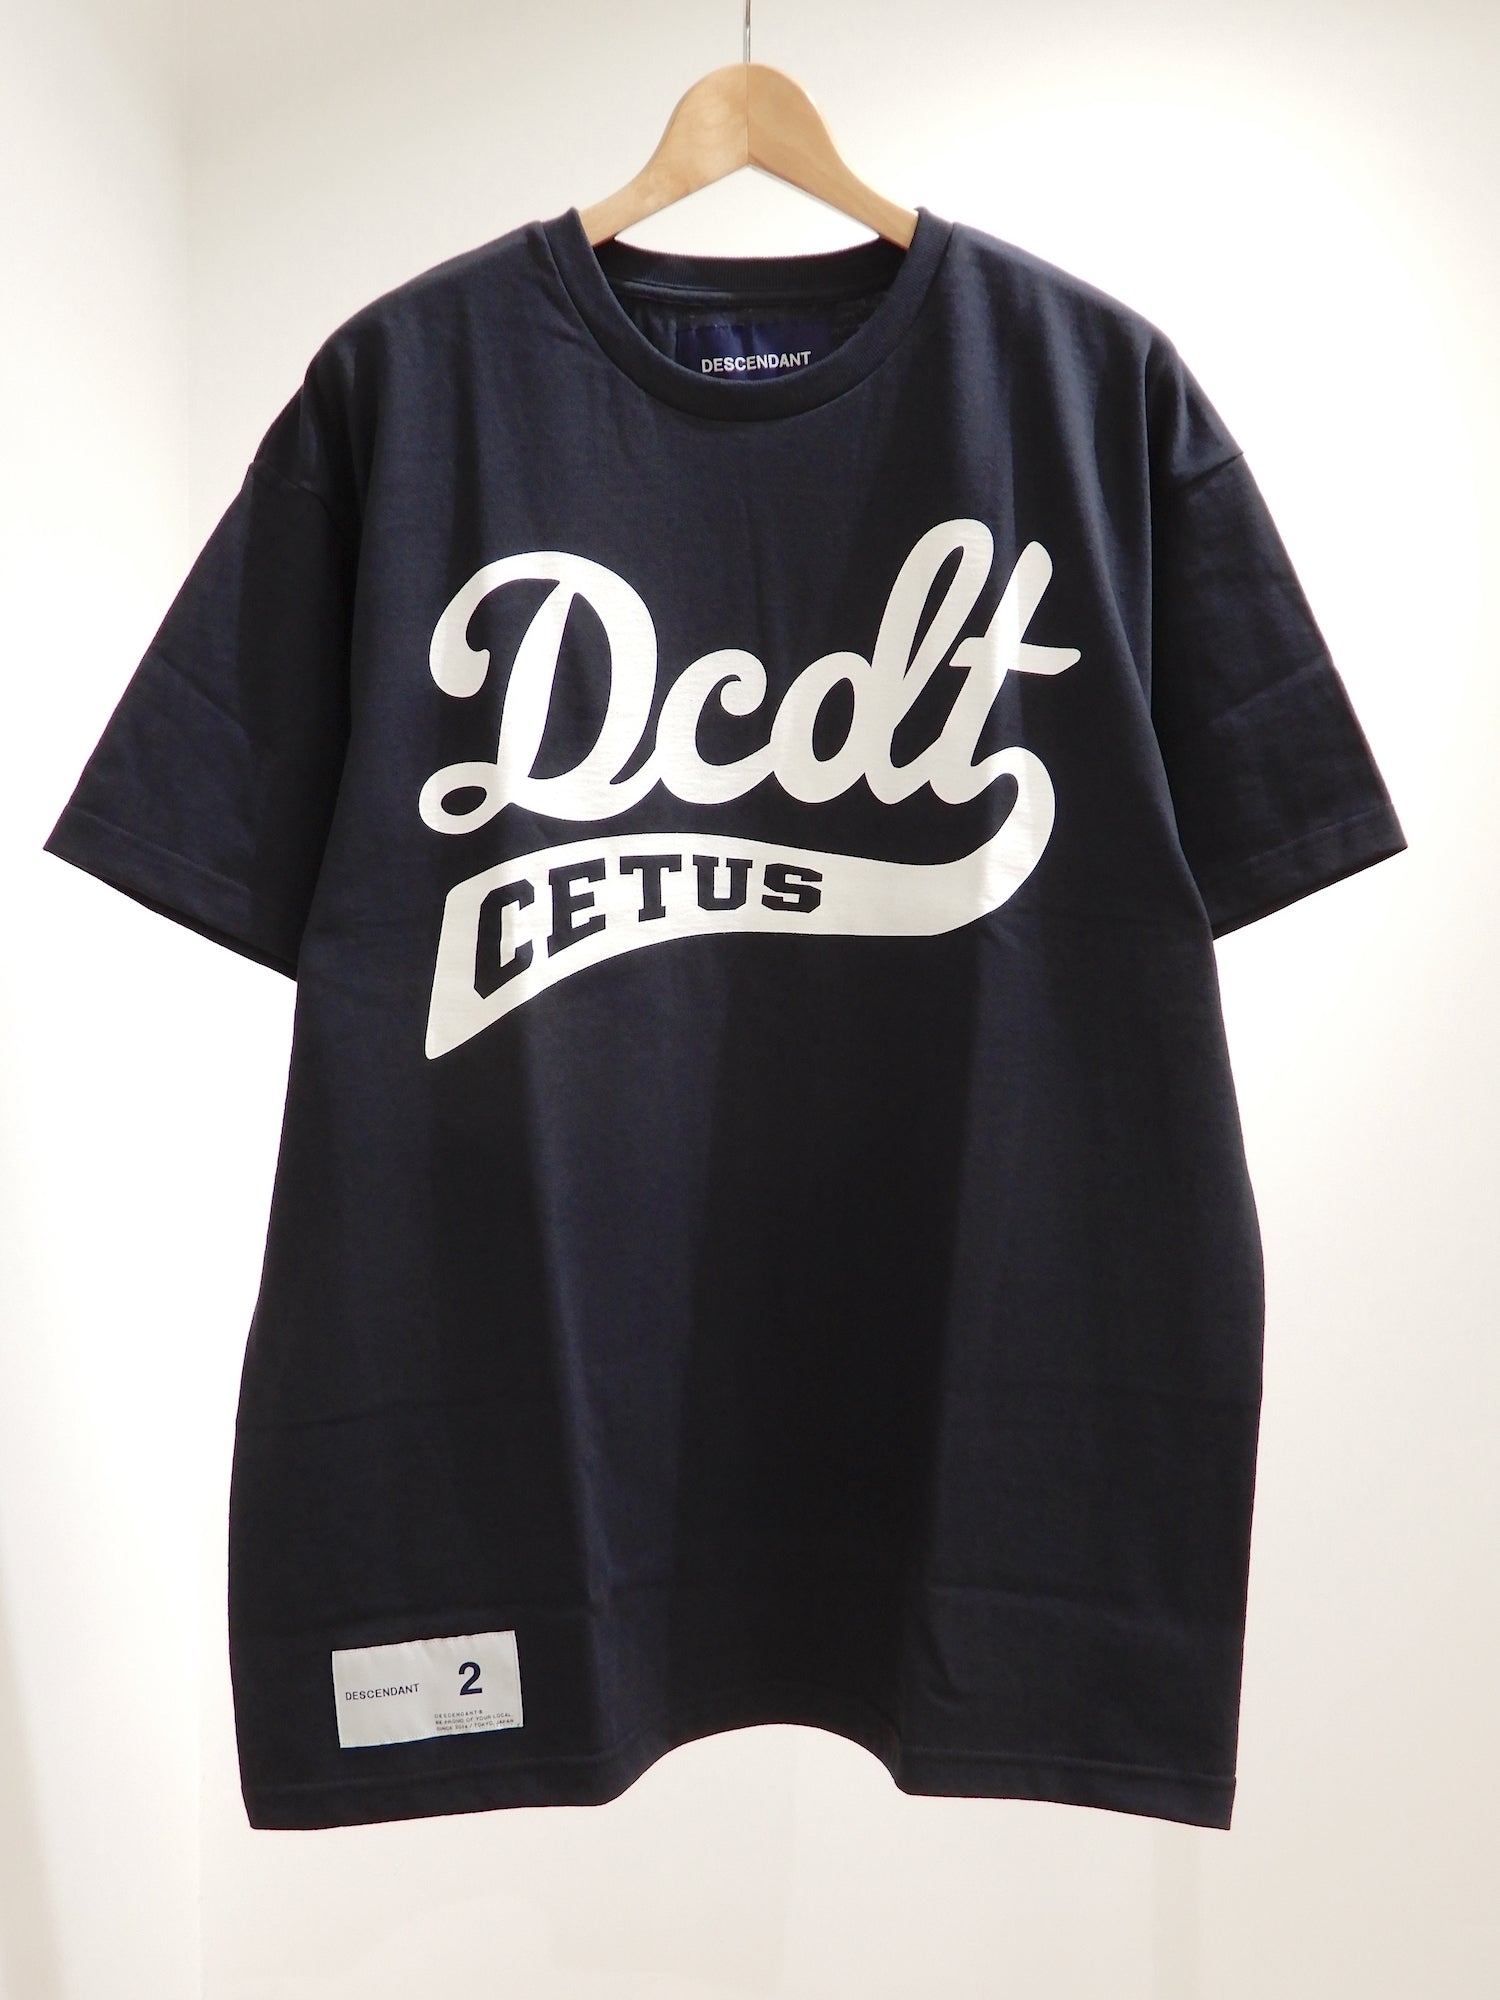 DESCENDANT DORSAL SS BLACK 2Tシャツ/カットソー(半袖/袖なし)